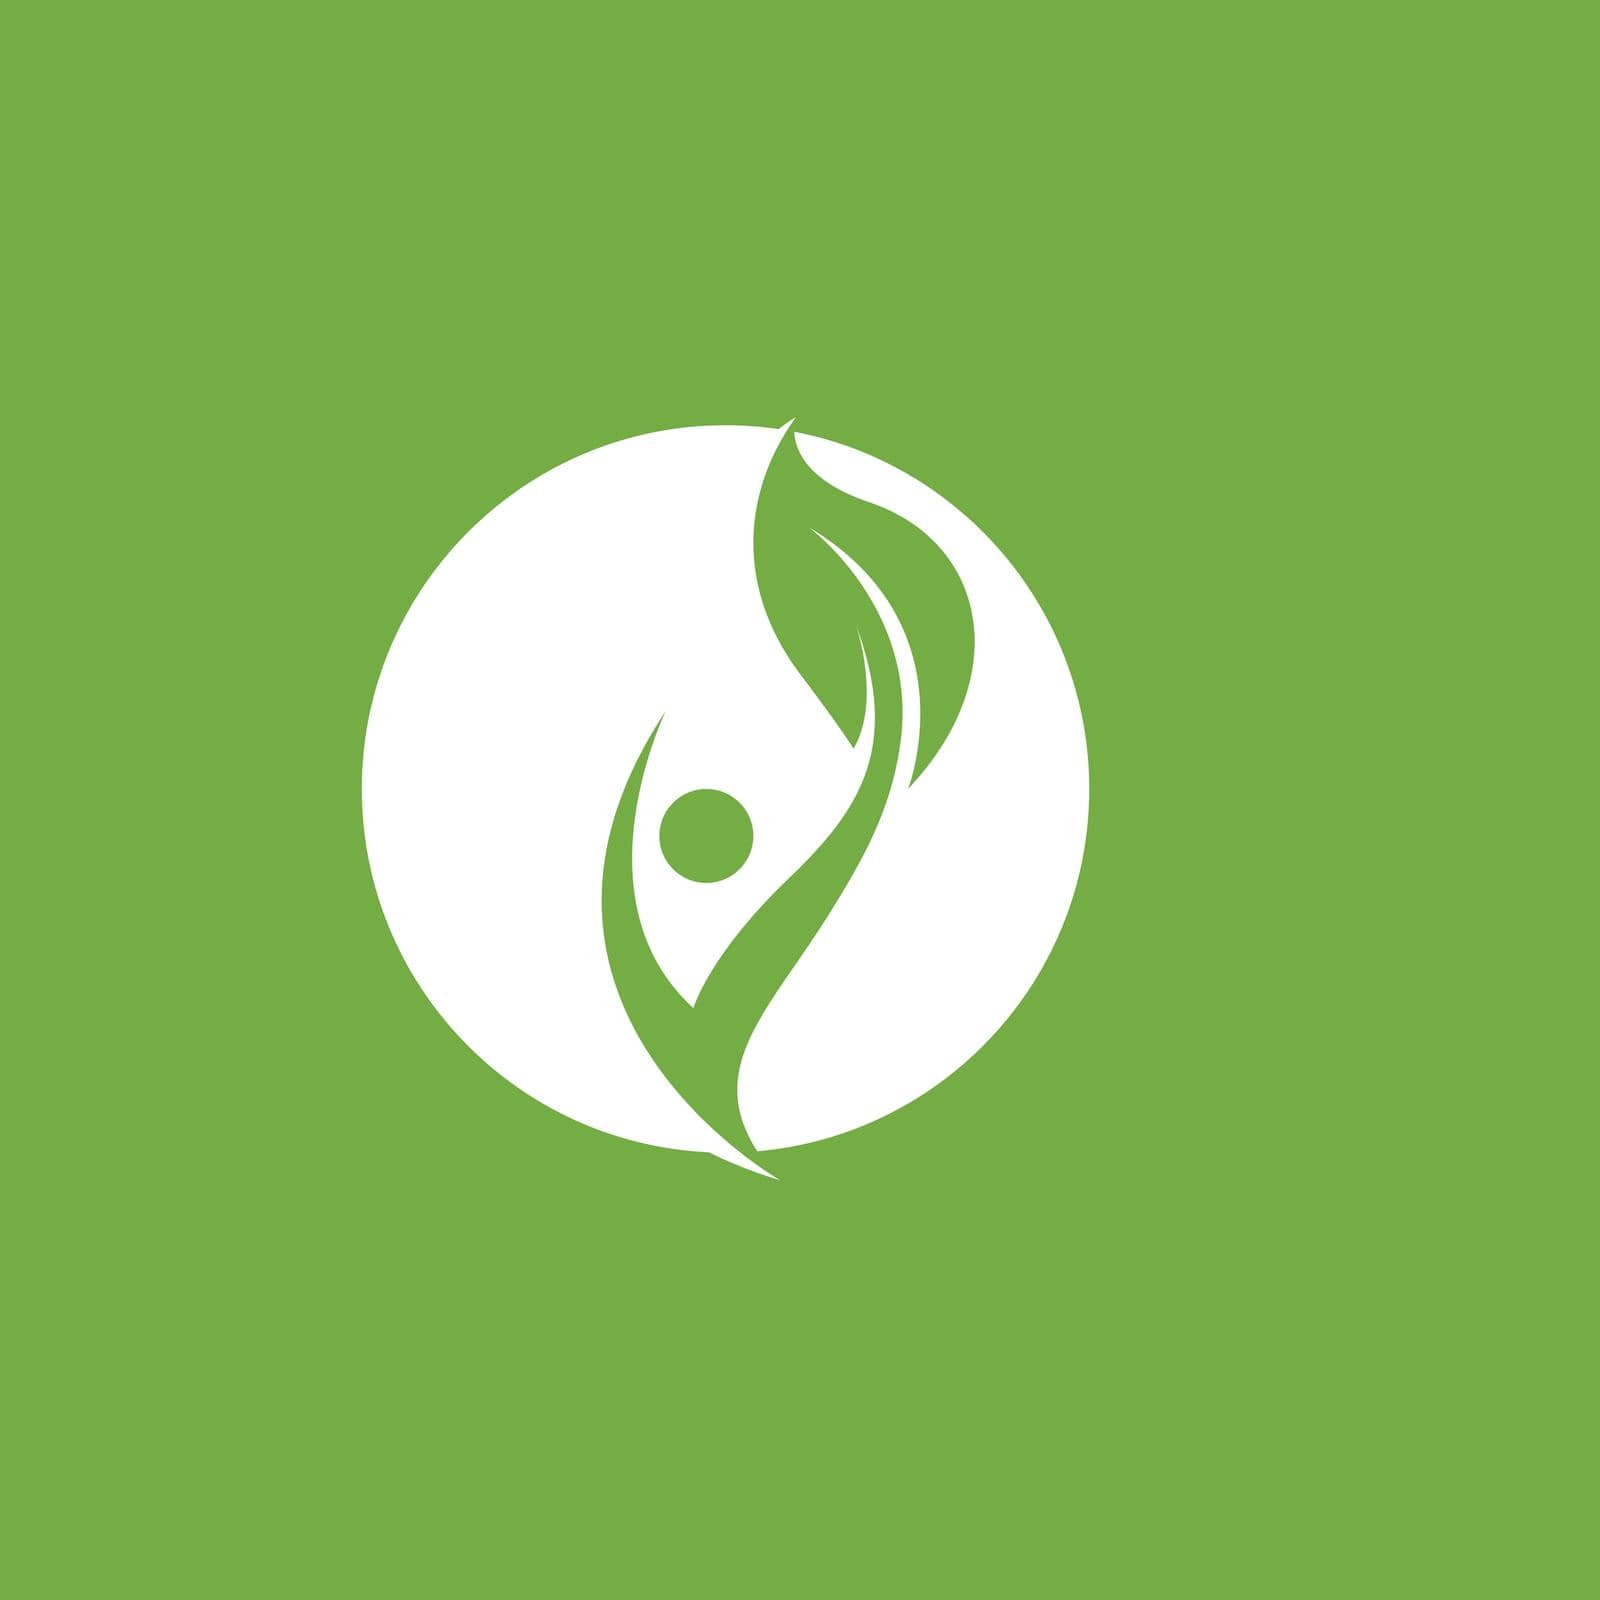 Leaf logo green nature vector image